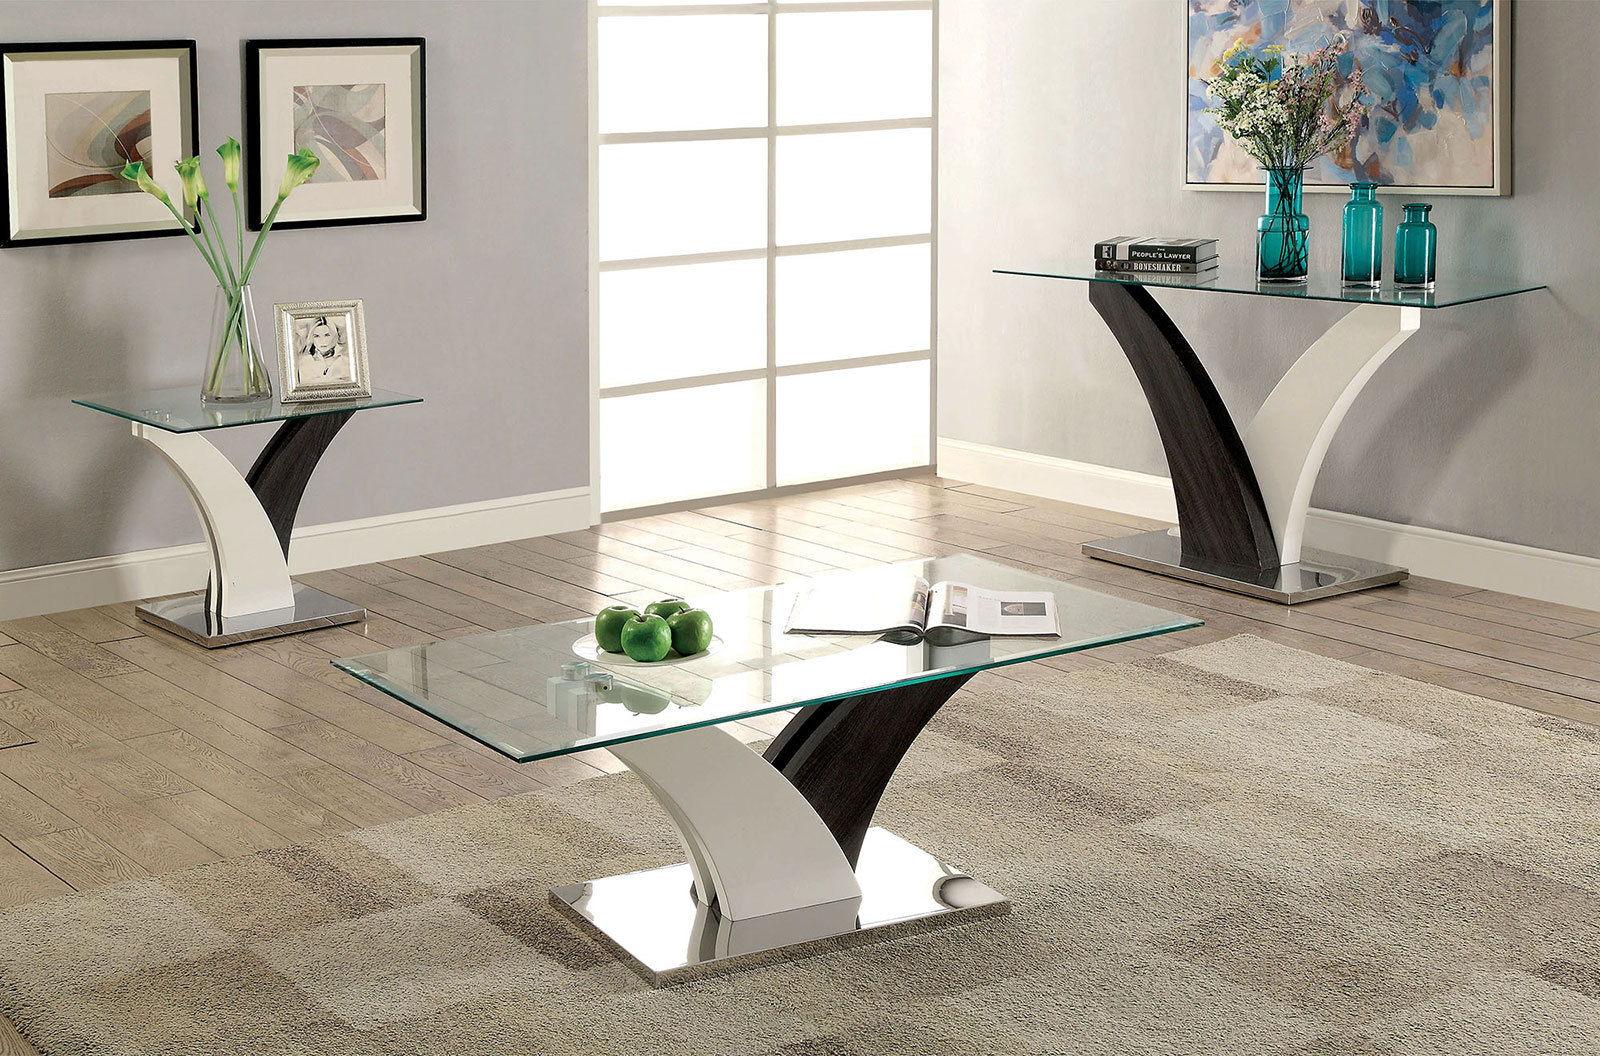 Furniture of America - Sloane - Sofa Table - White / Dark Gray - 5th Avenue Furniture